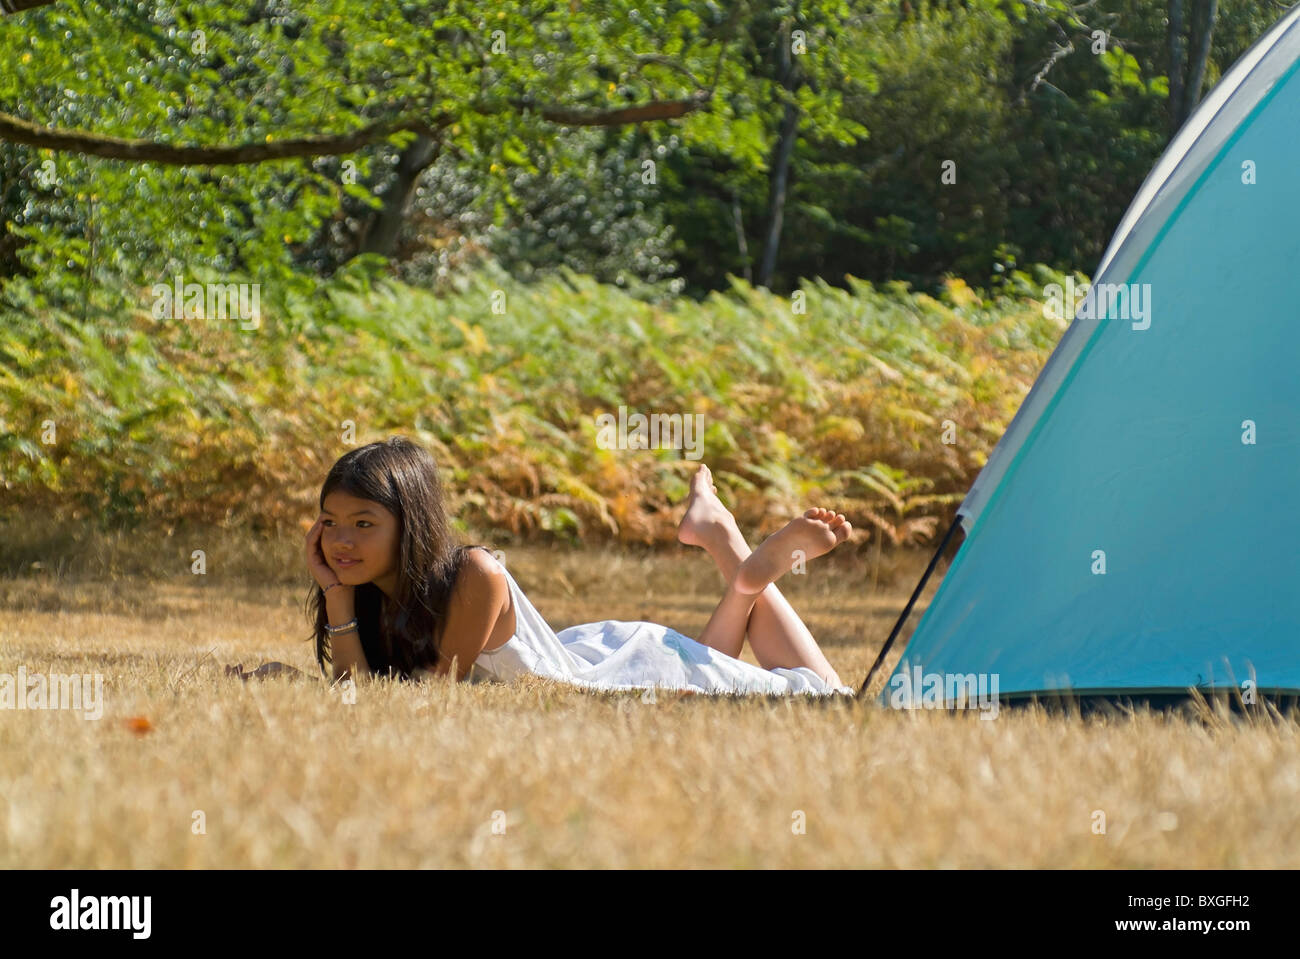 Vacanza in campeggio - ragazza giovane disteso accanto ad una tenda da campeggio nella foresta delle Landes, Aquitaine, Francia. Foto Stock